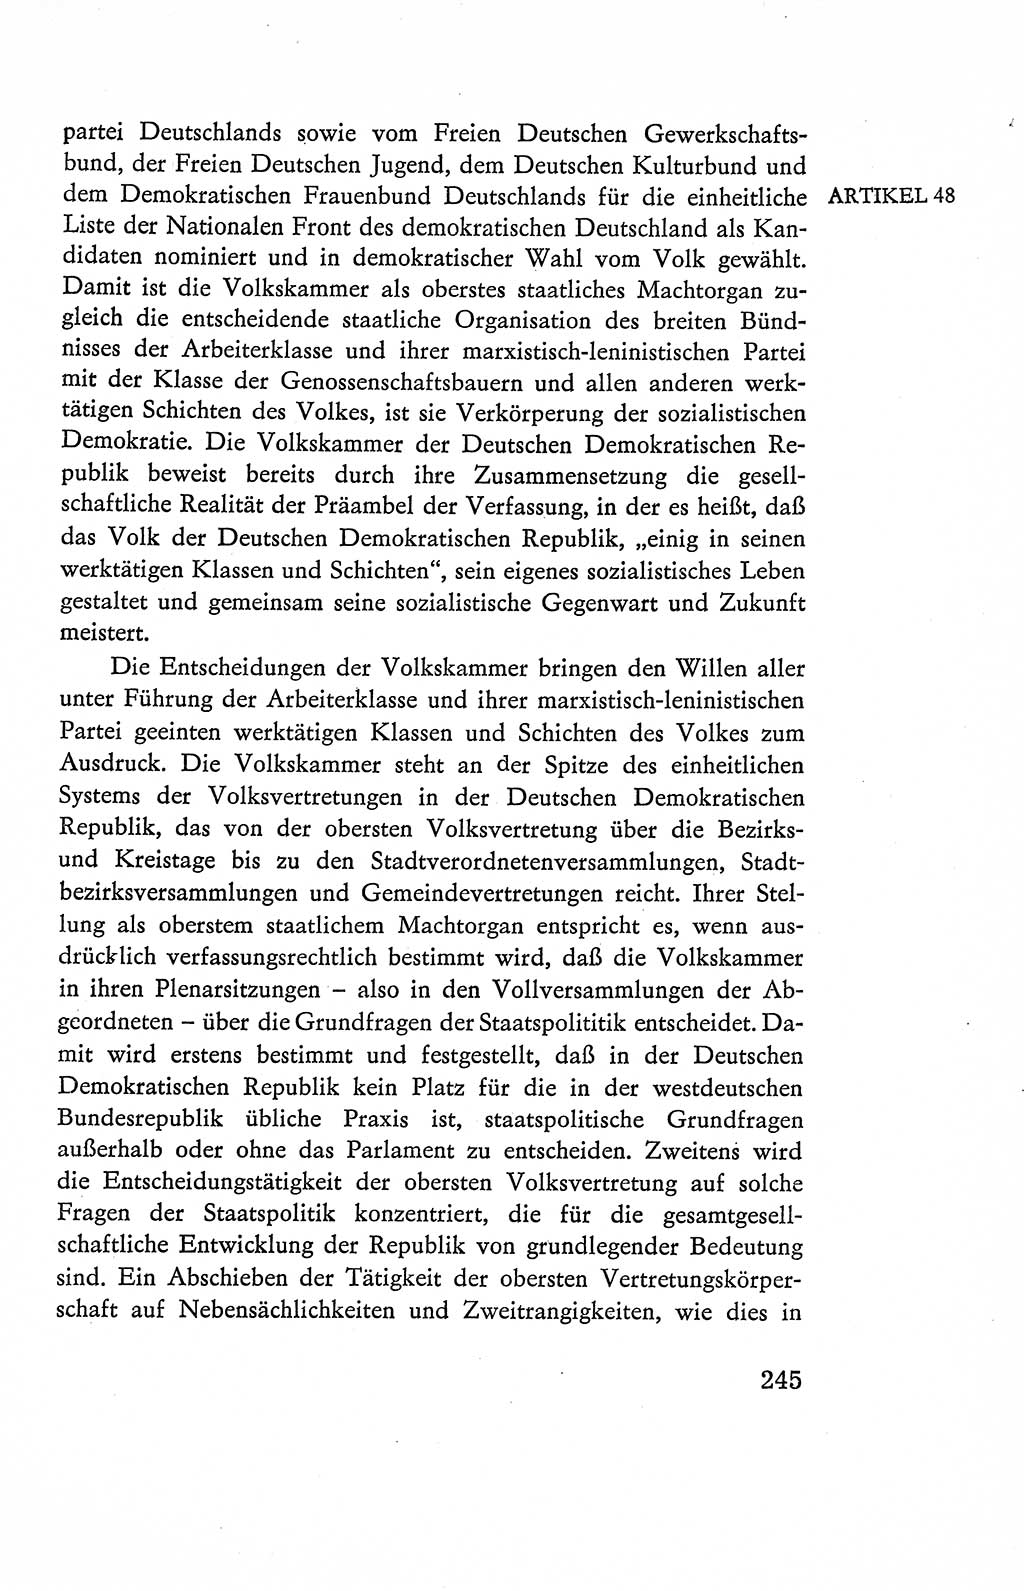 Verfassung der Deutschen Demokratischen Republik (DDR), Dokumente, Kommentar 1969, Band 2, Seite 245 (Verf. DDR Dok. Komm. 1969, Bd. 2, S. 245)